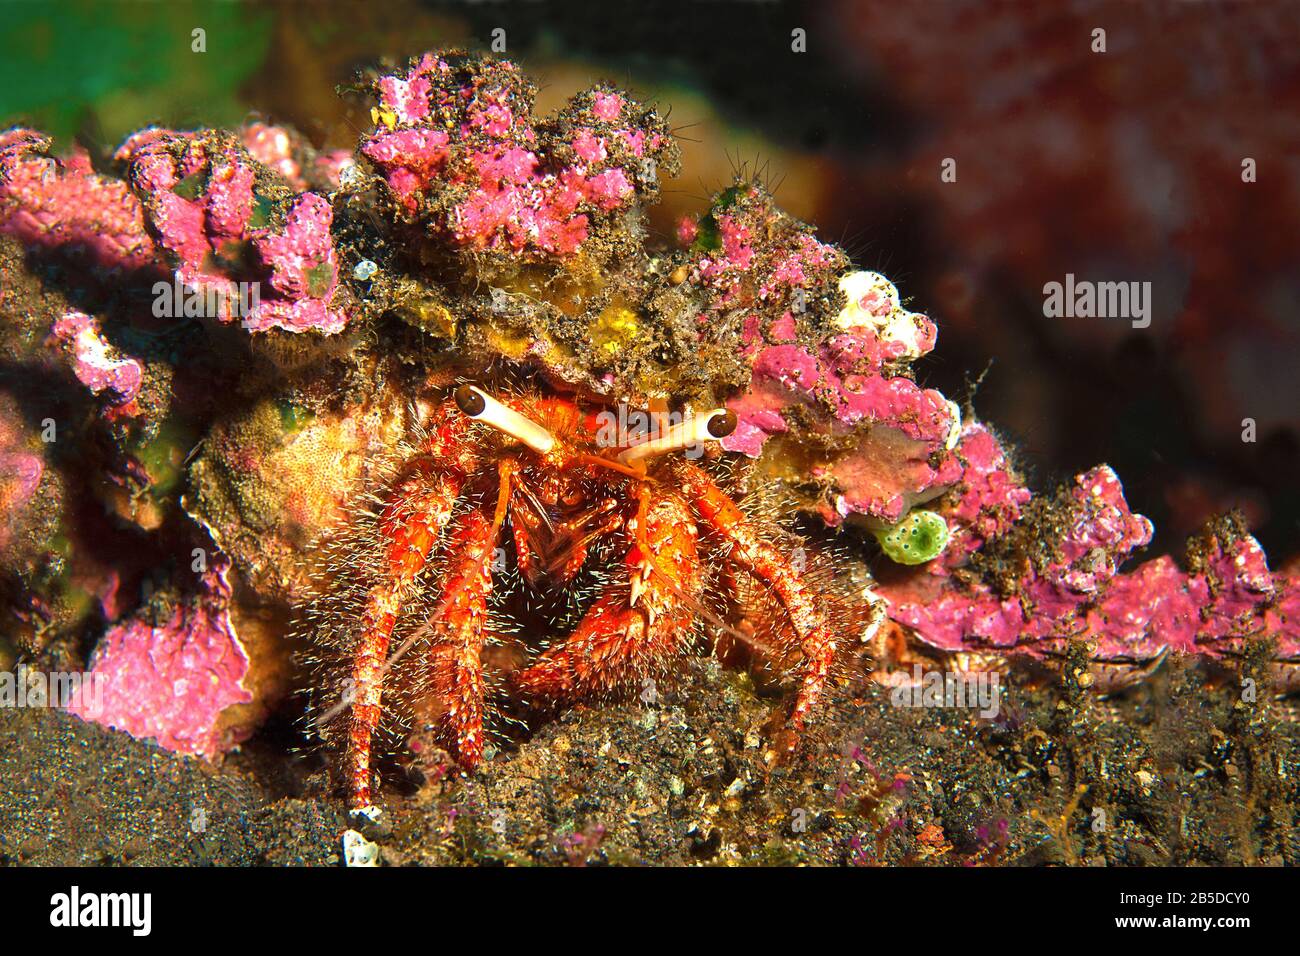 Tarnung, um zu überleben. Nahaufnahme der Krabbe, die ein Anemon auf dem Rücken trägt, um sich vor Feinden zu schützen. Entdeckt bei einem Tauchgang in Bali, Indonesien Stockfoto